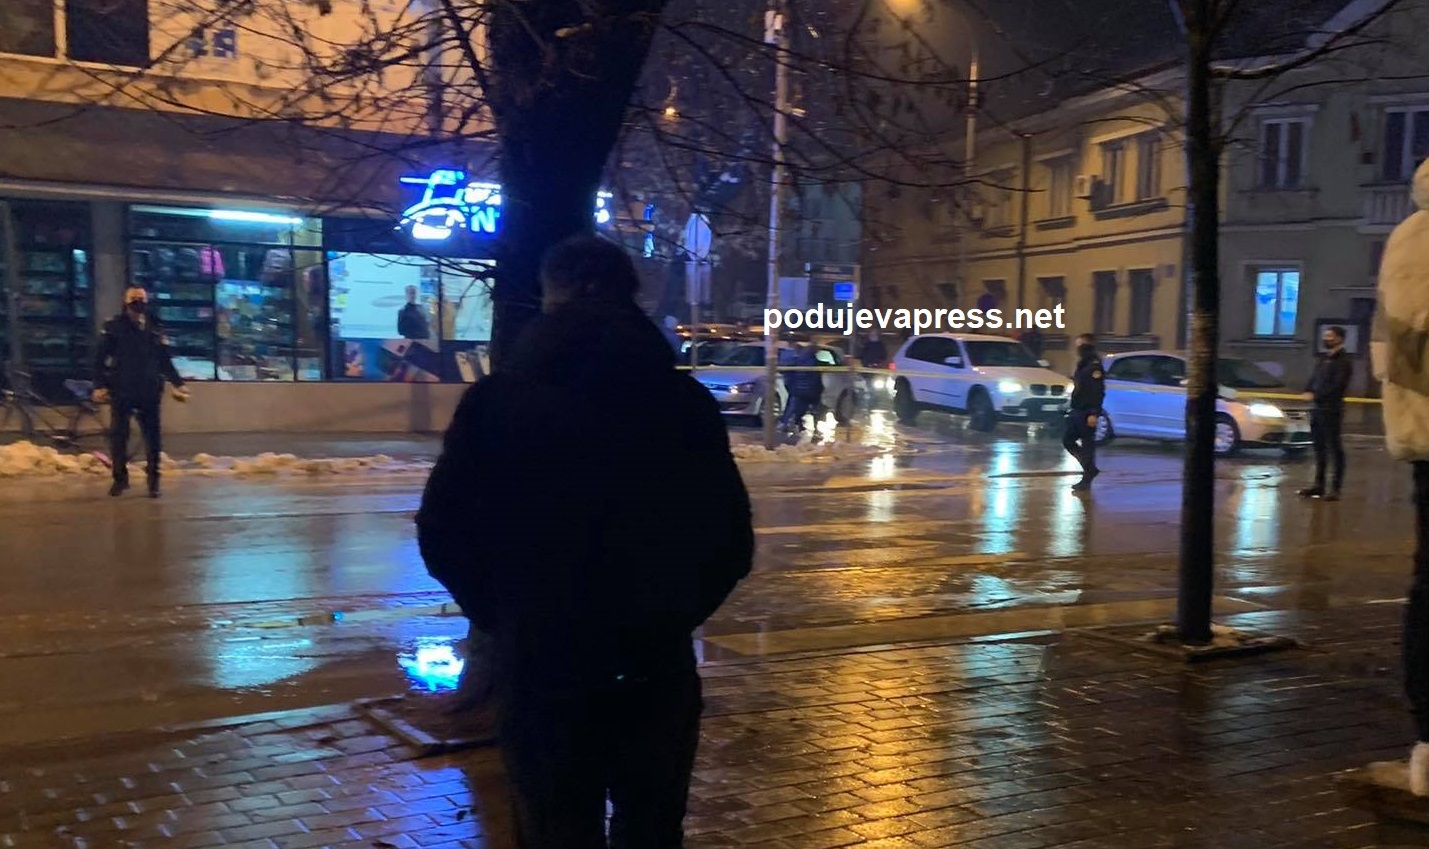  Këto janë pamjet nga vendi i ngjarjes në Podujevë, pas gjuajtjeve me armë zjarri